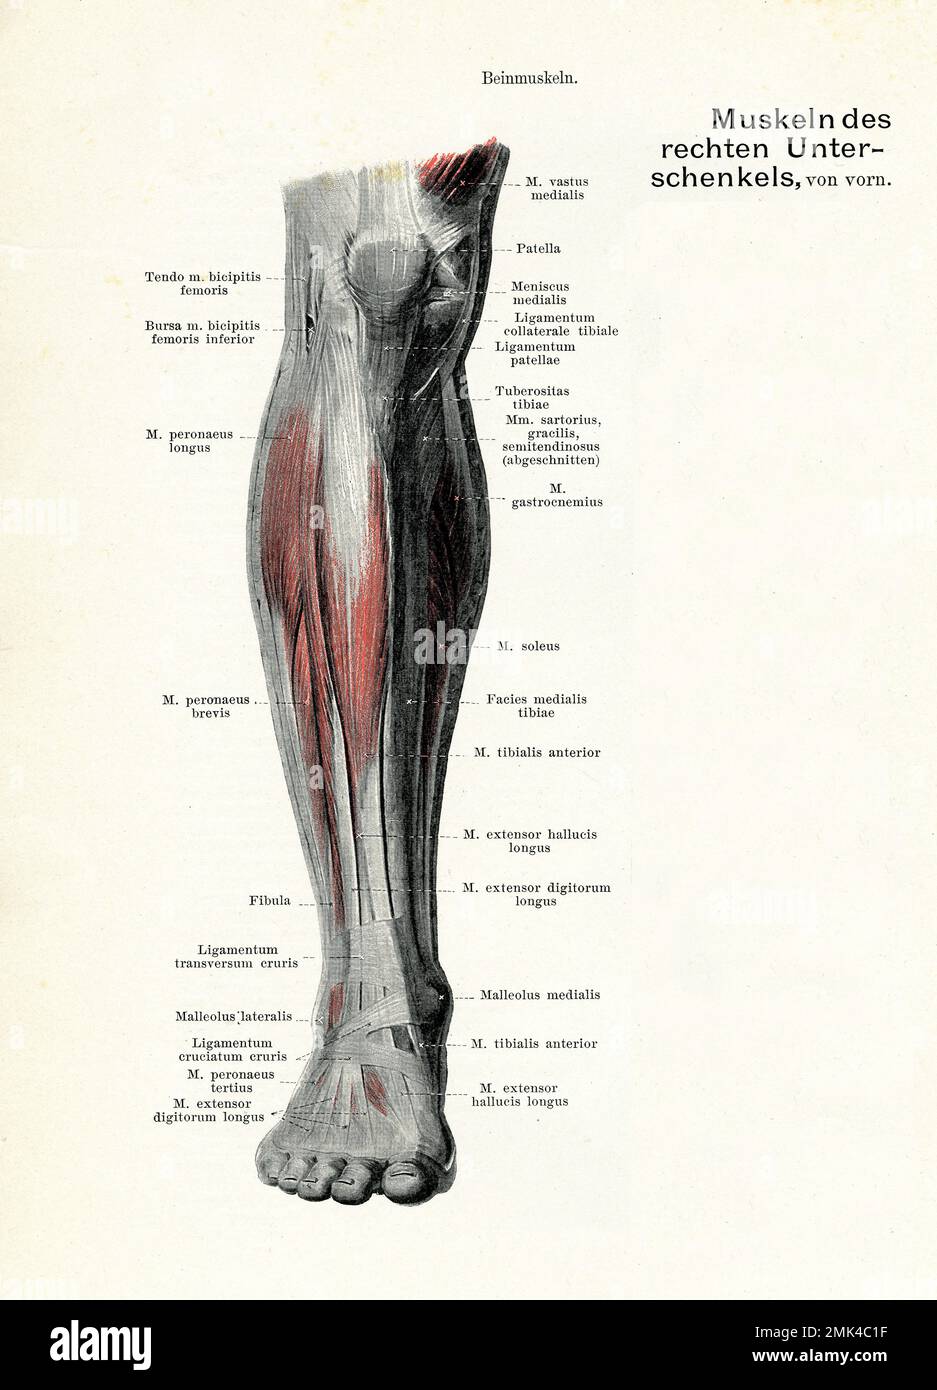 Illustration ancienne de l'anatomie musculature de la vue frontale de la jambe inférieure, avec des descriptions anatomiques allemandes Banque D'Images